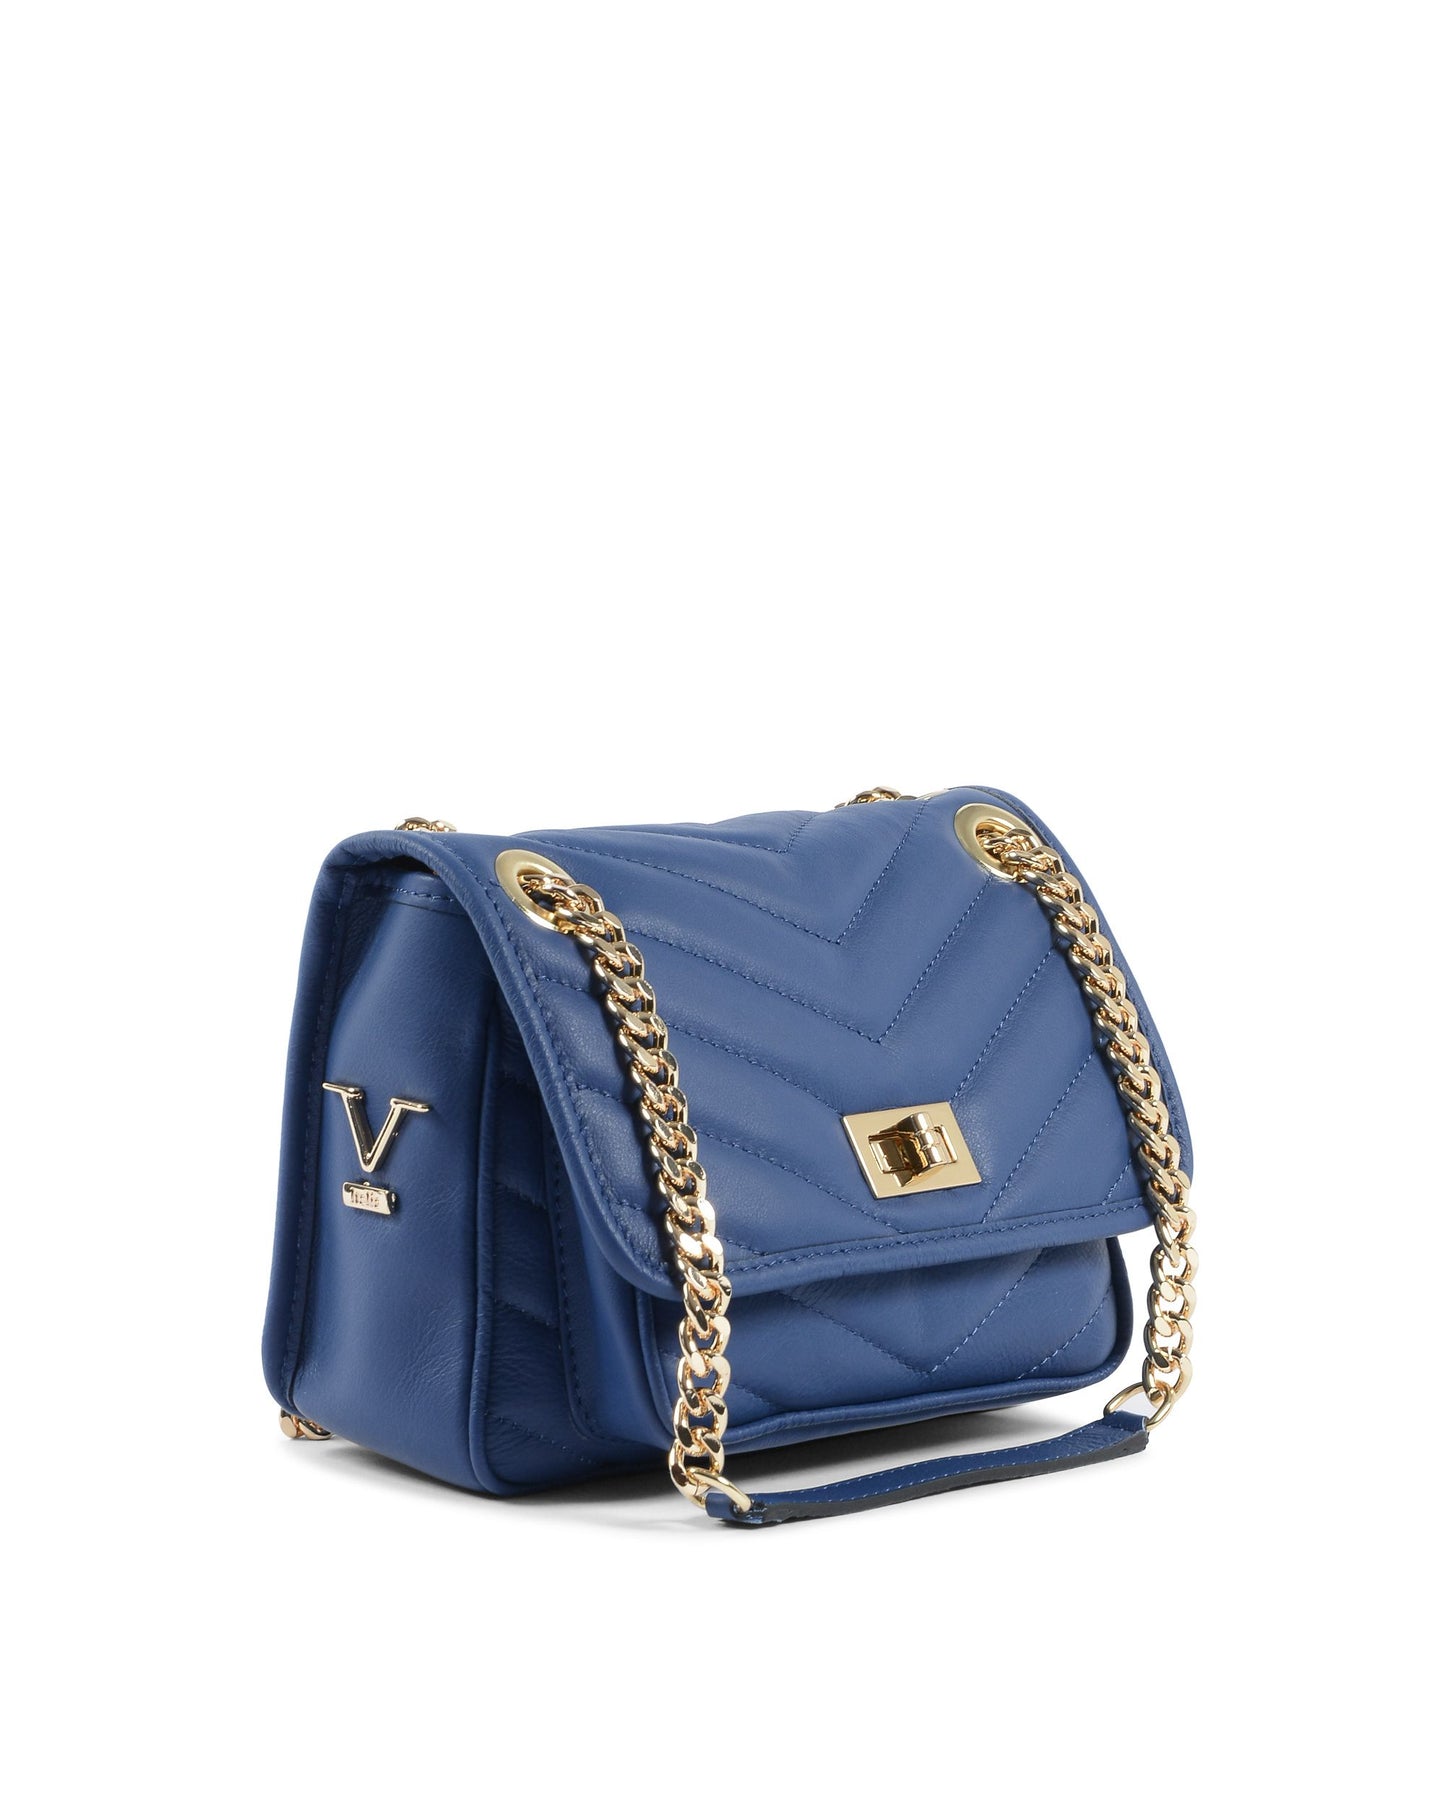 V Italia Womens Handbag Blue 10507 SAUVAGE BLUETTE